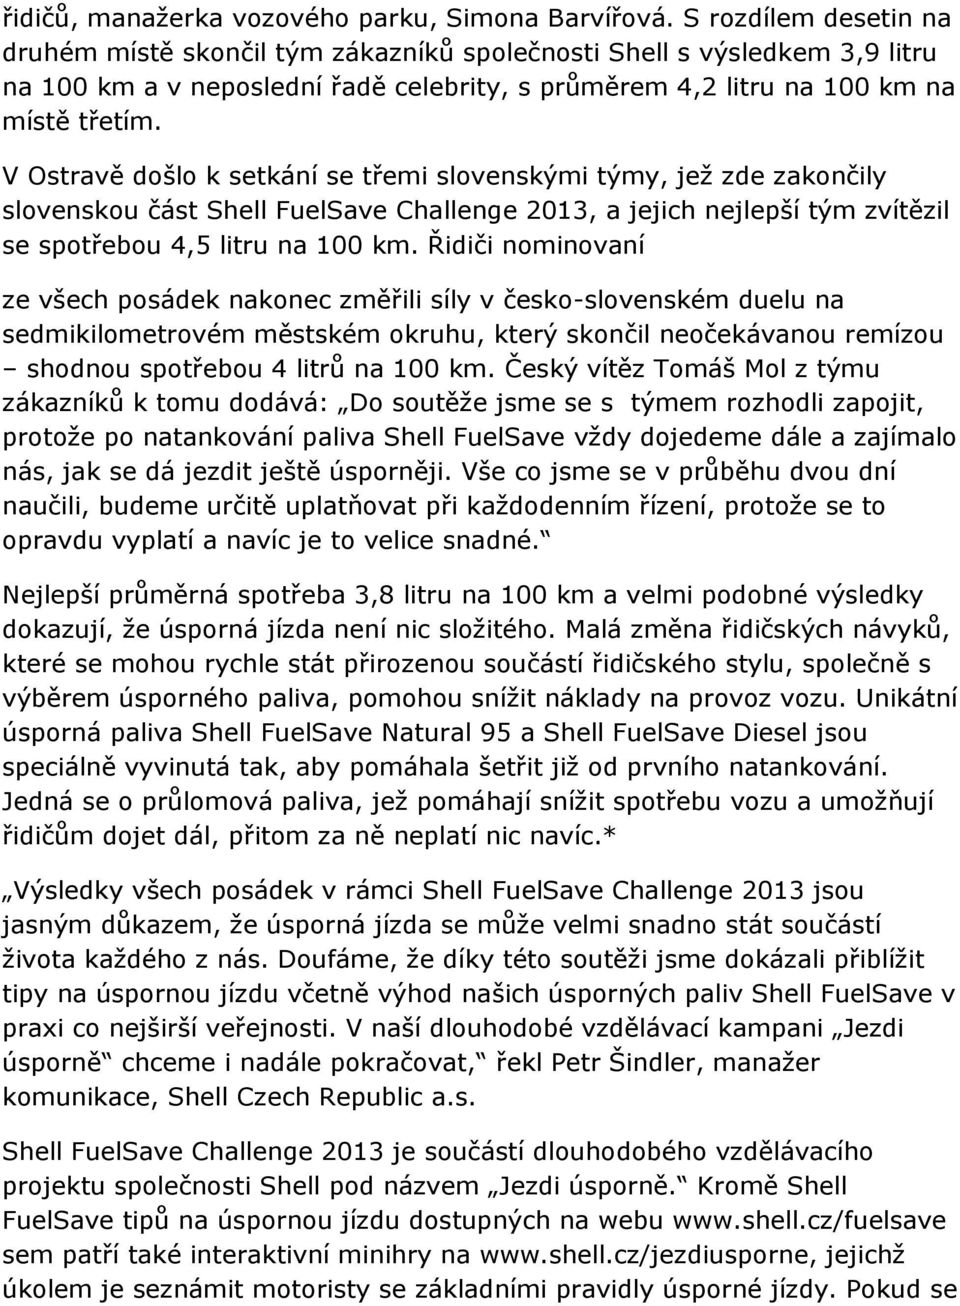 V Ostravě došlo k setkání se třemi slovenskými týmy, jež zde zakončily slovenskou část Shell FuelSave Challenge 2013, a jejich nejlepší tým zvítězil se spotřebou 4,5 litru na 100 km.